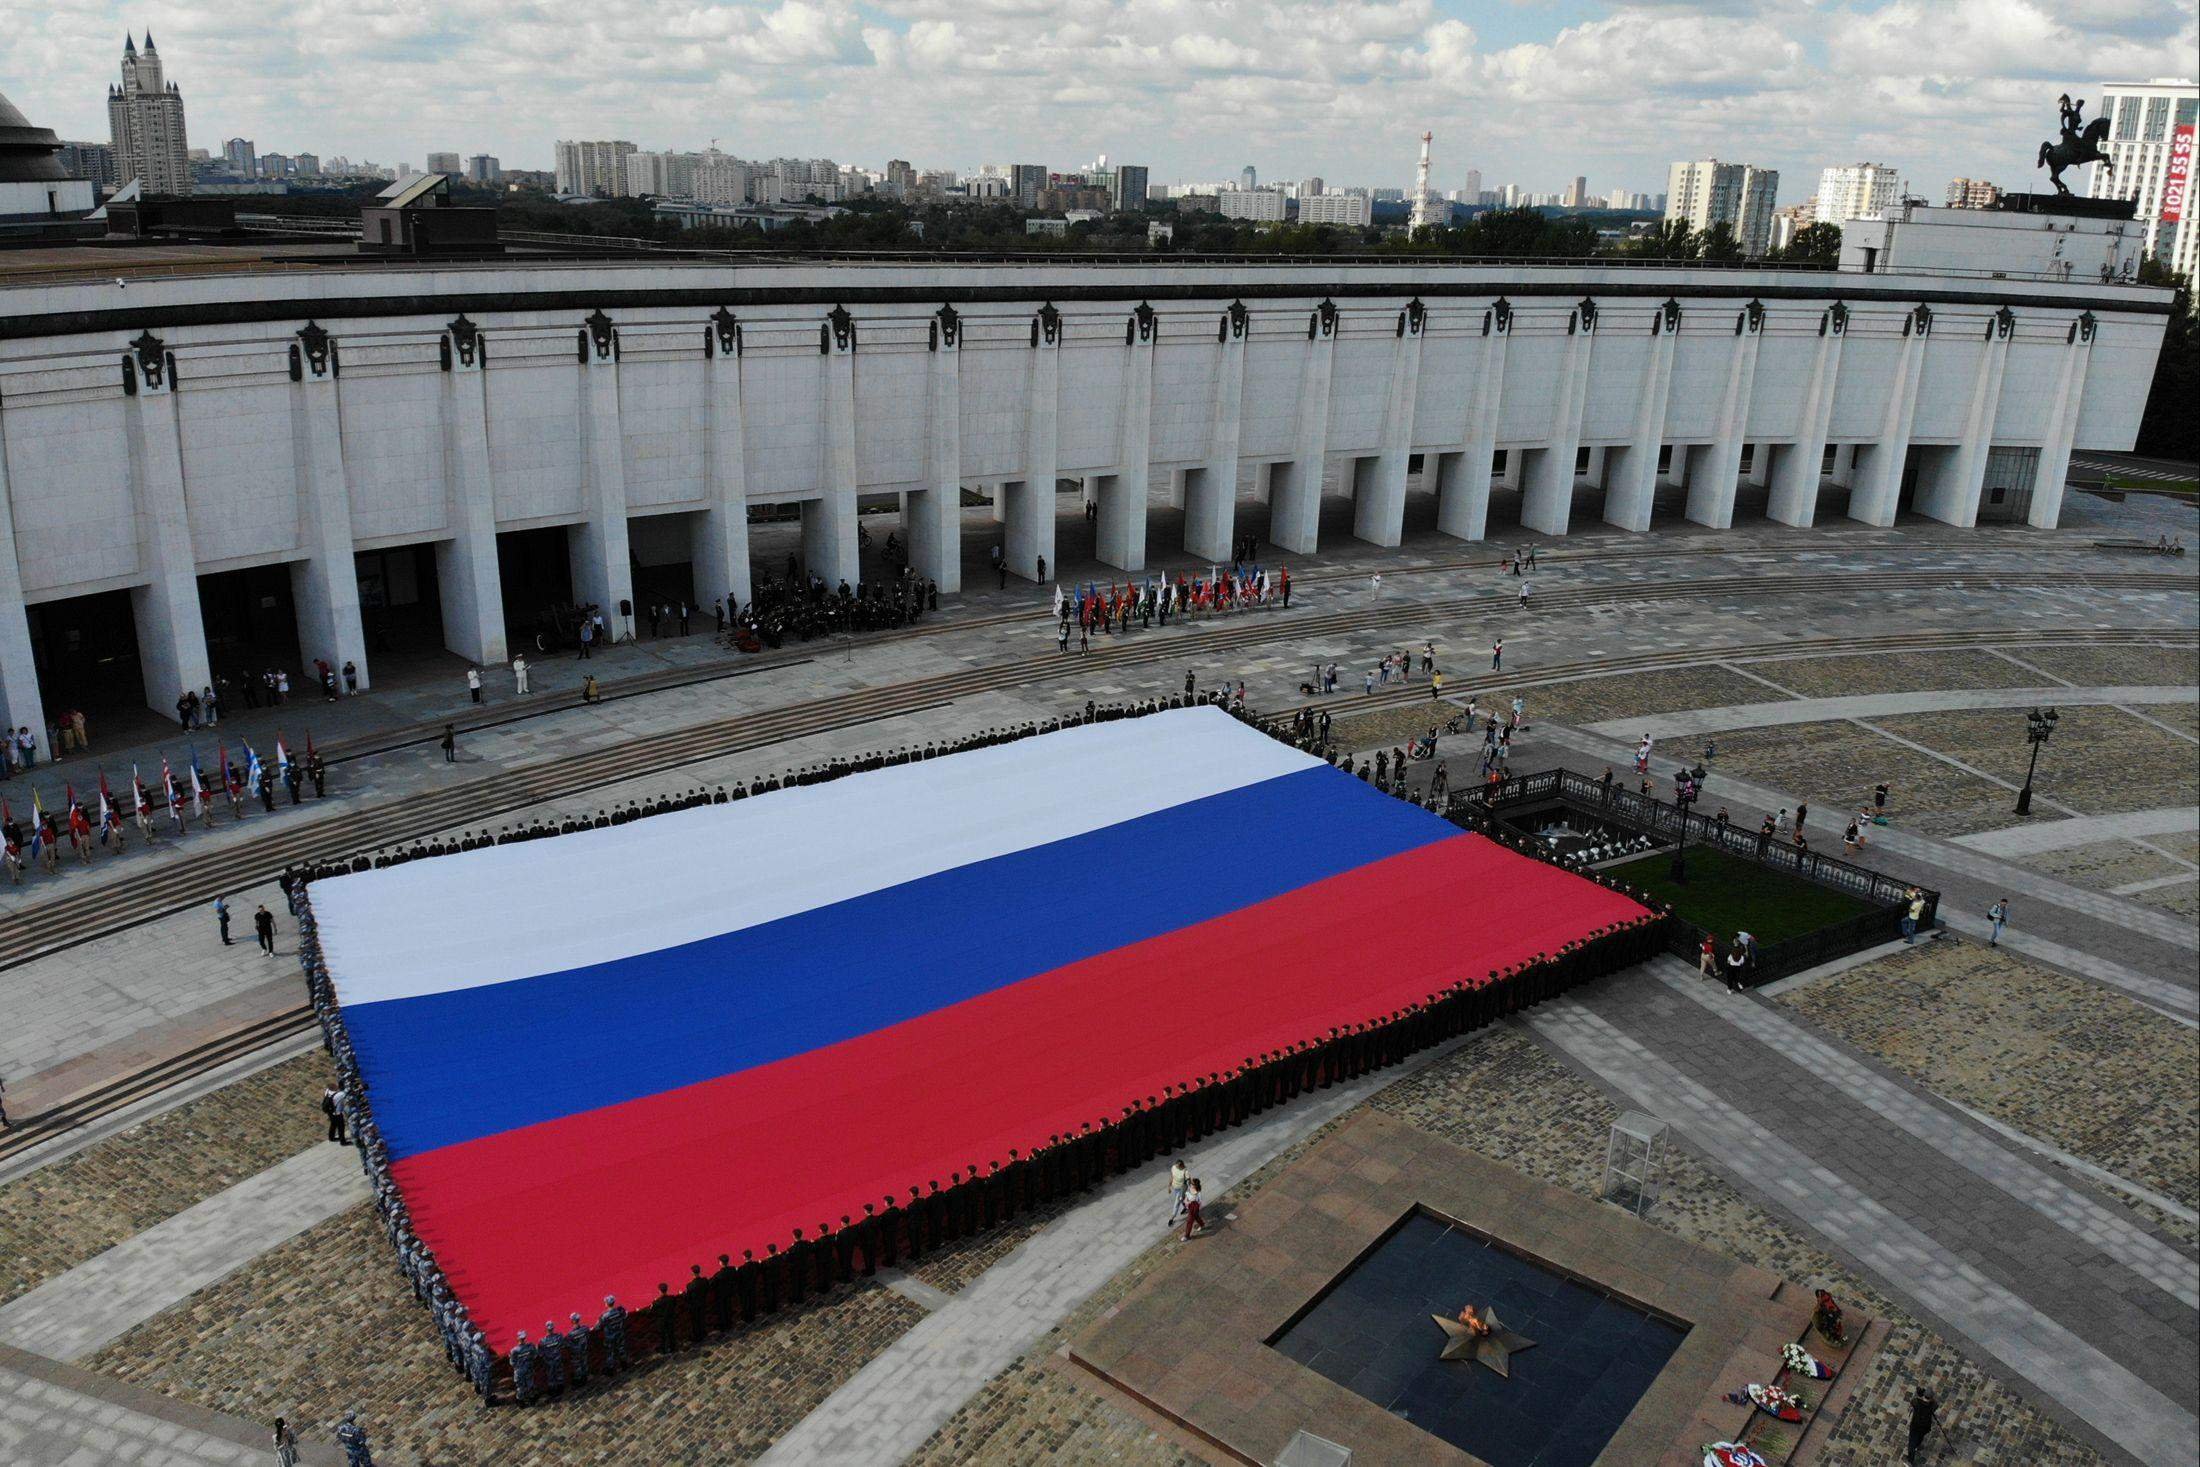 Показать фотографии флагов. Большой флаг России. Самый юольшой флаг Росси. Огромный флаг России. Огромный флагшток России.